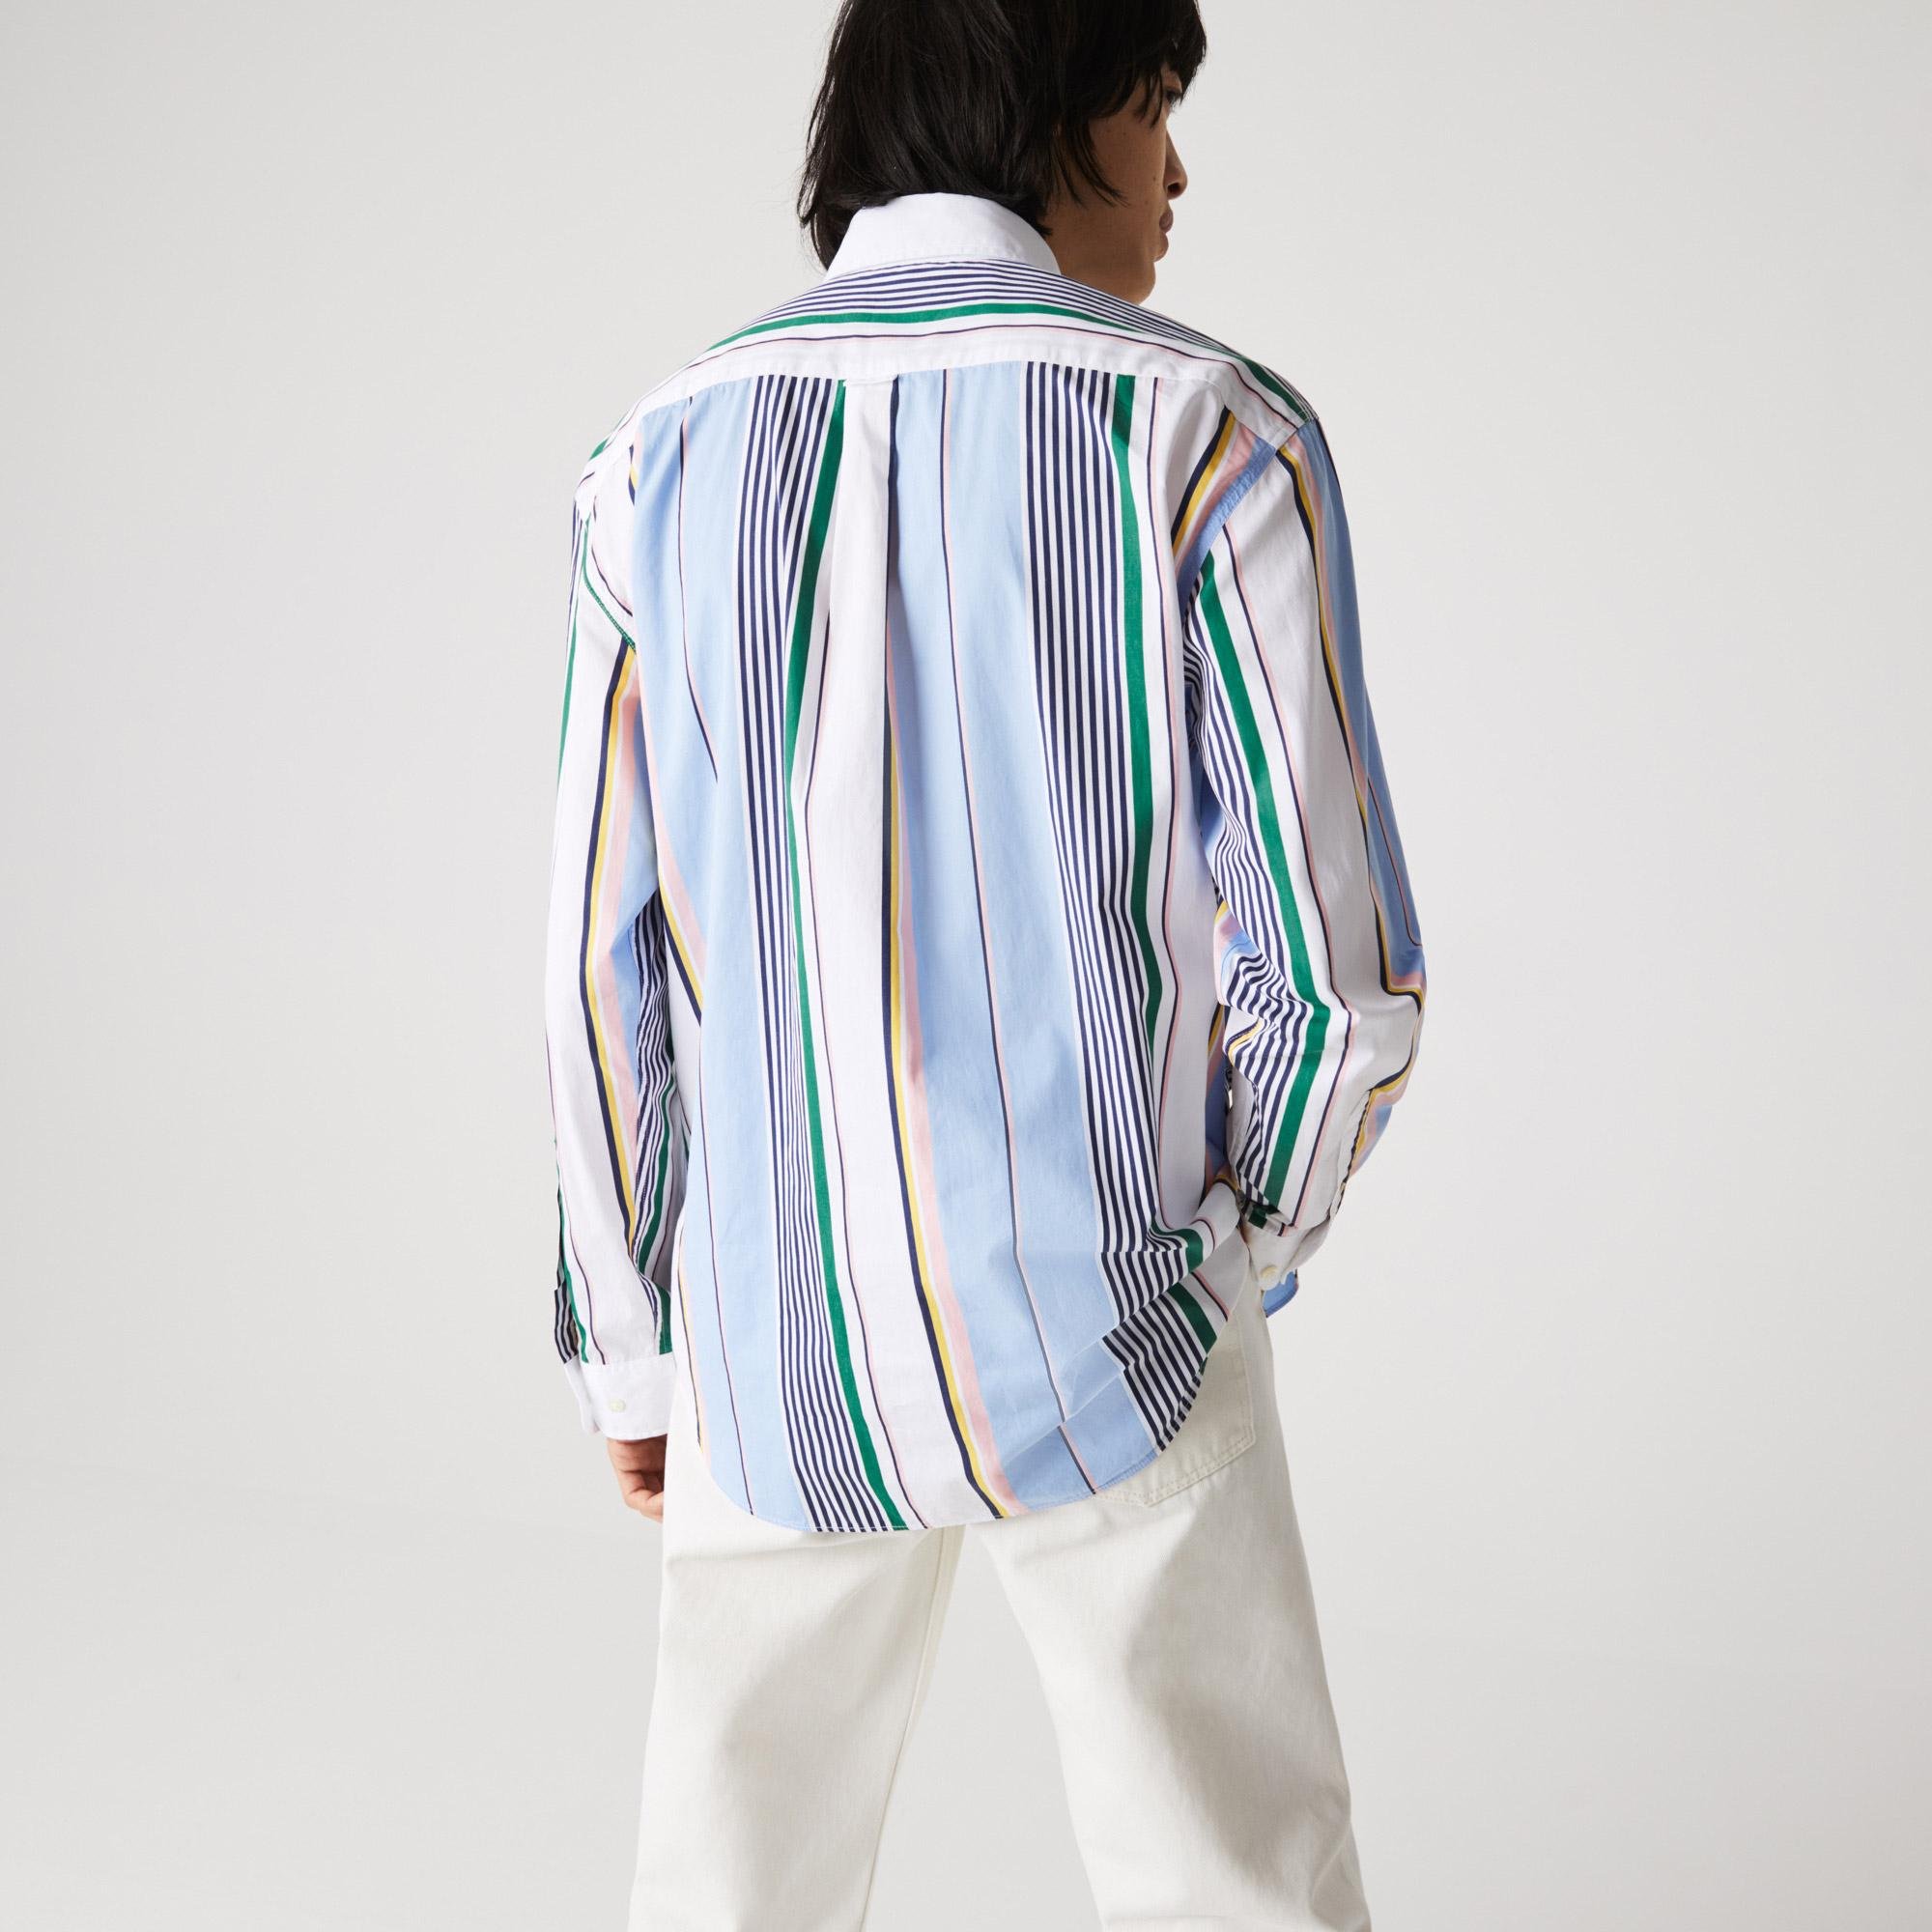 Lacoste L!VE pánská bavlněná košile volného střihu s nerovnoměrnými pruhy